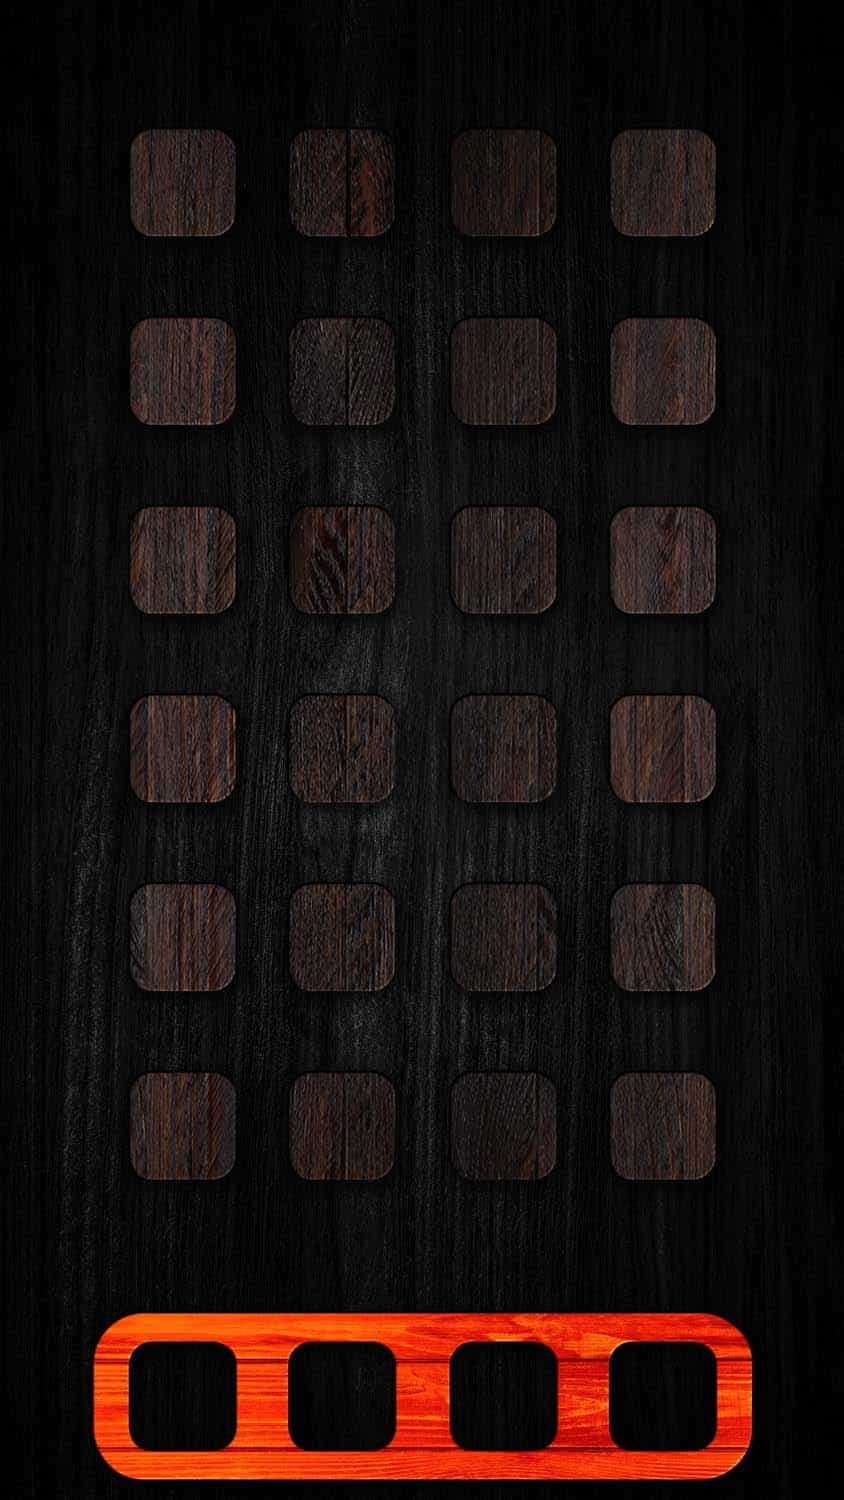 IOS Wooden App Dock IPhone Wallpaper HD  IPhone Wallpapers